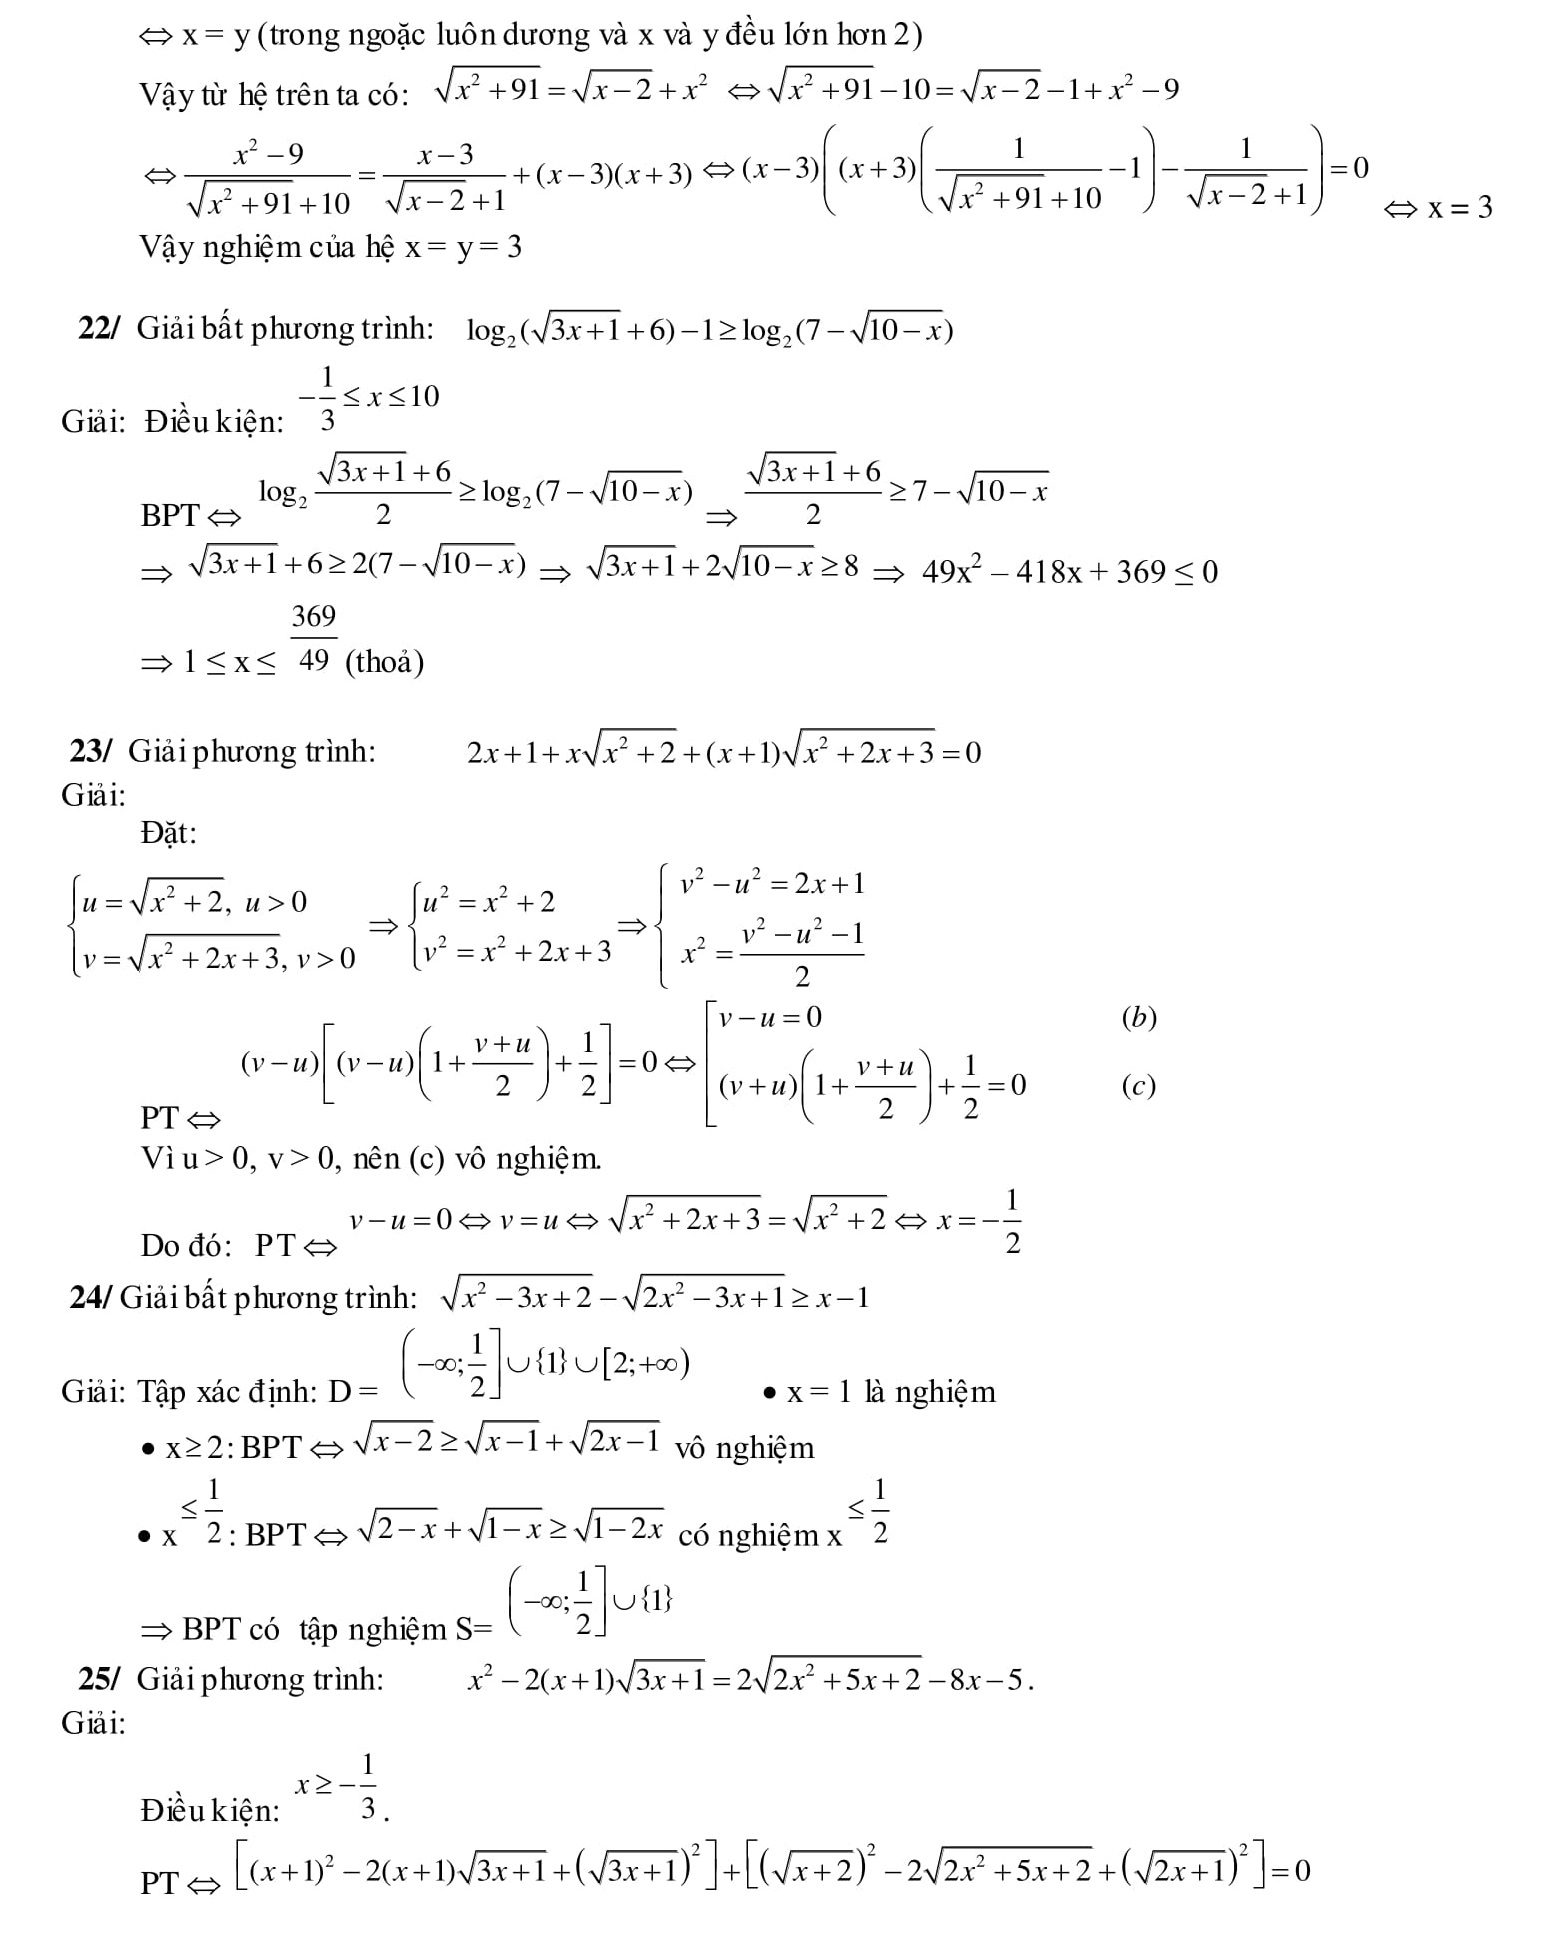 260 Bài tập Hệ phương trình Toán 9 trong đề thi